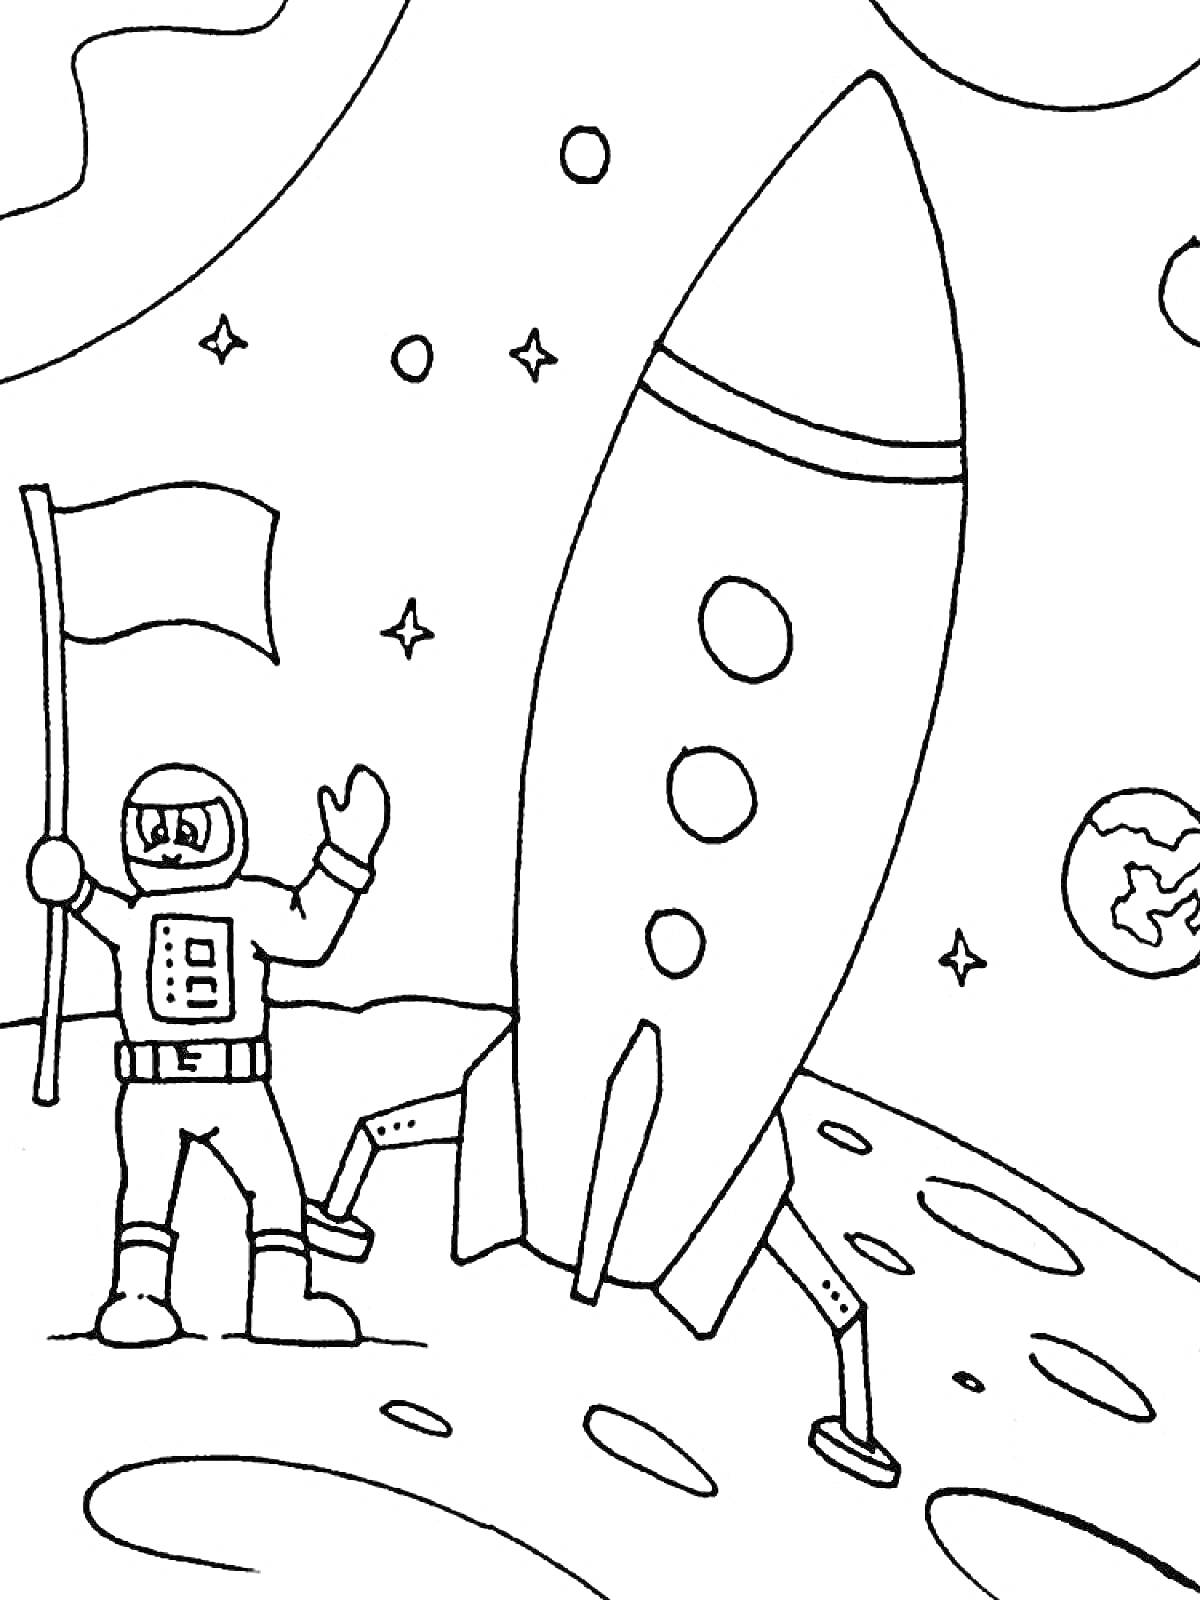 Космонавт с флагом возле ракеты на поверхности планеты с видом на звезды и Землю